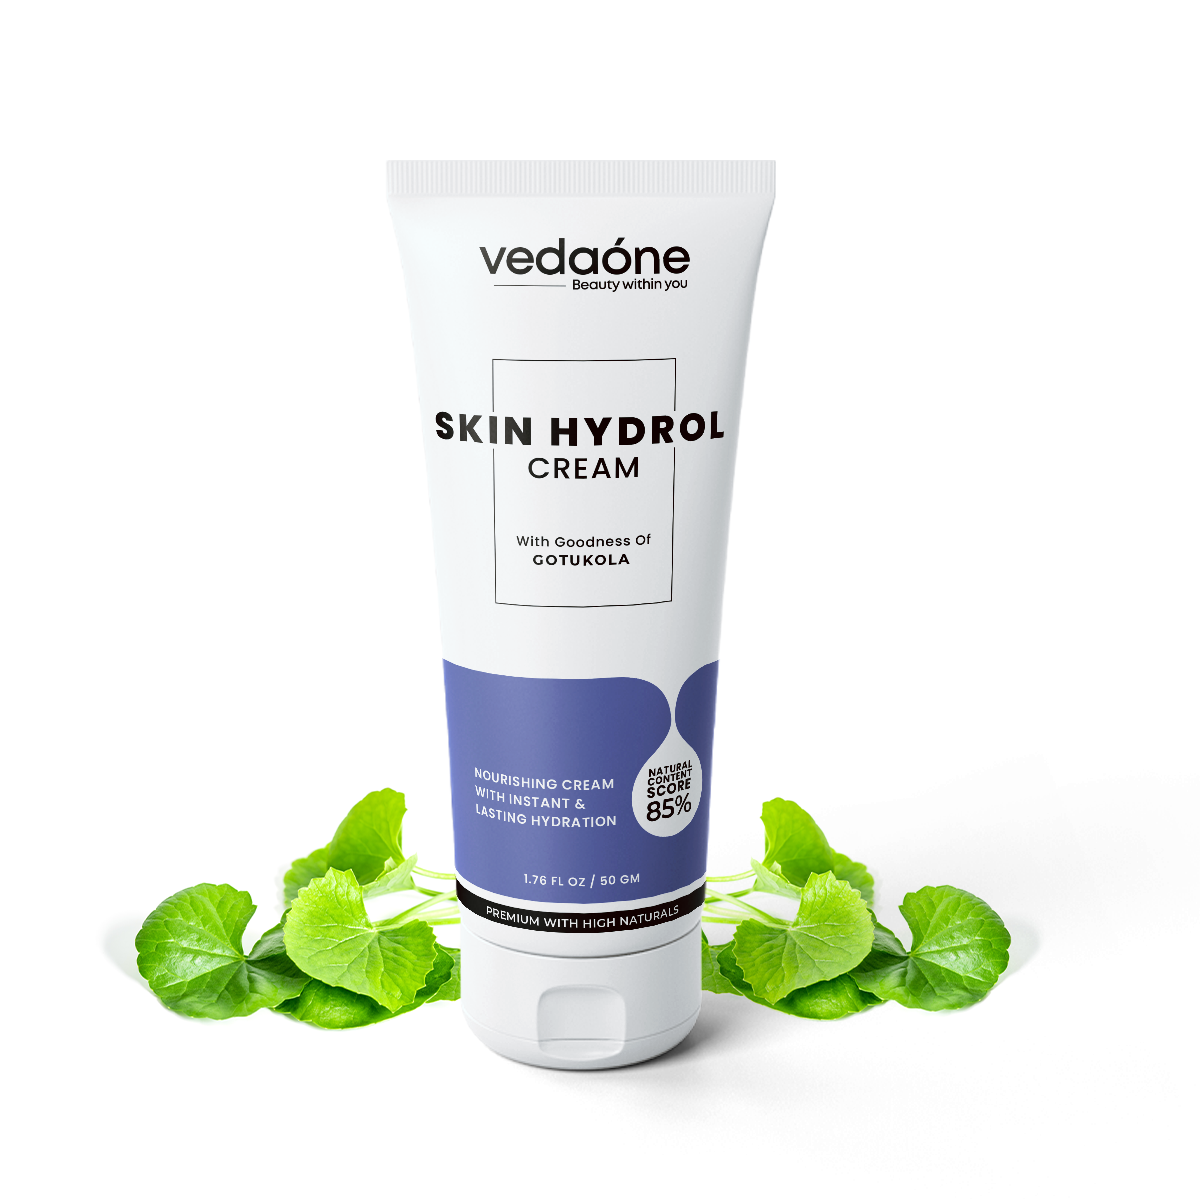 Skin hydrol cream